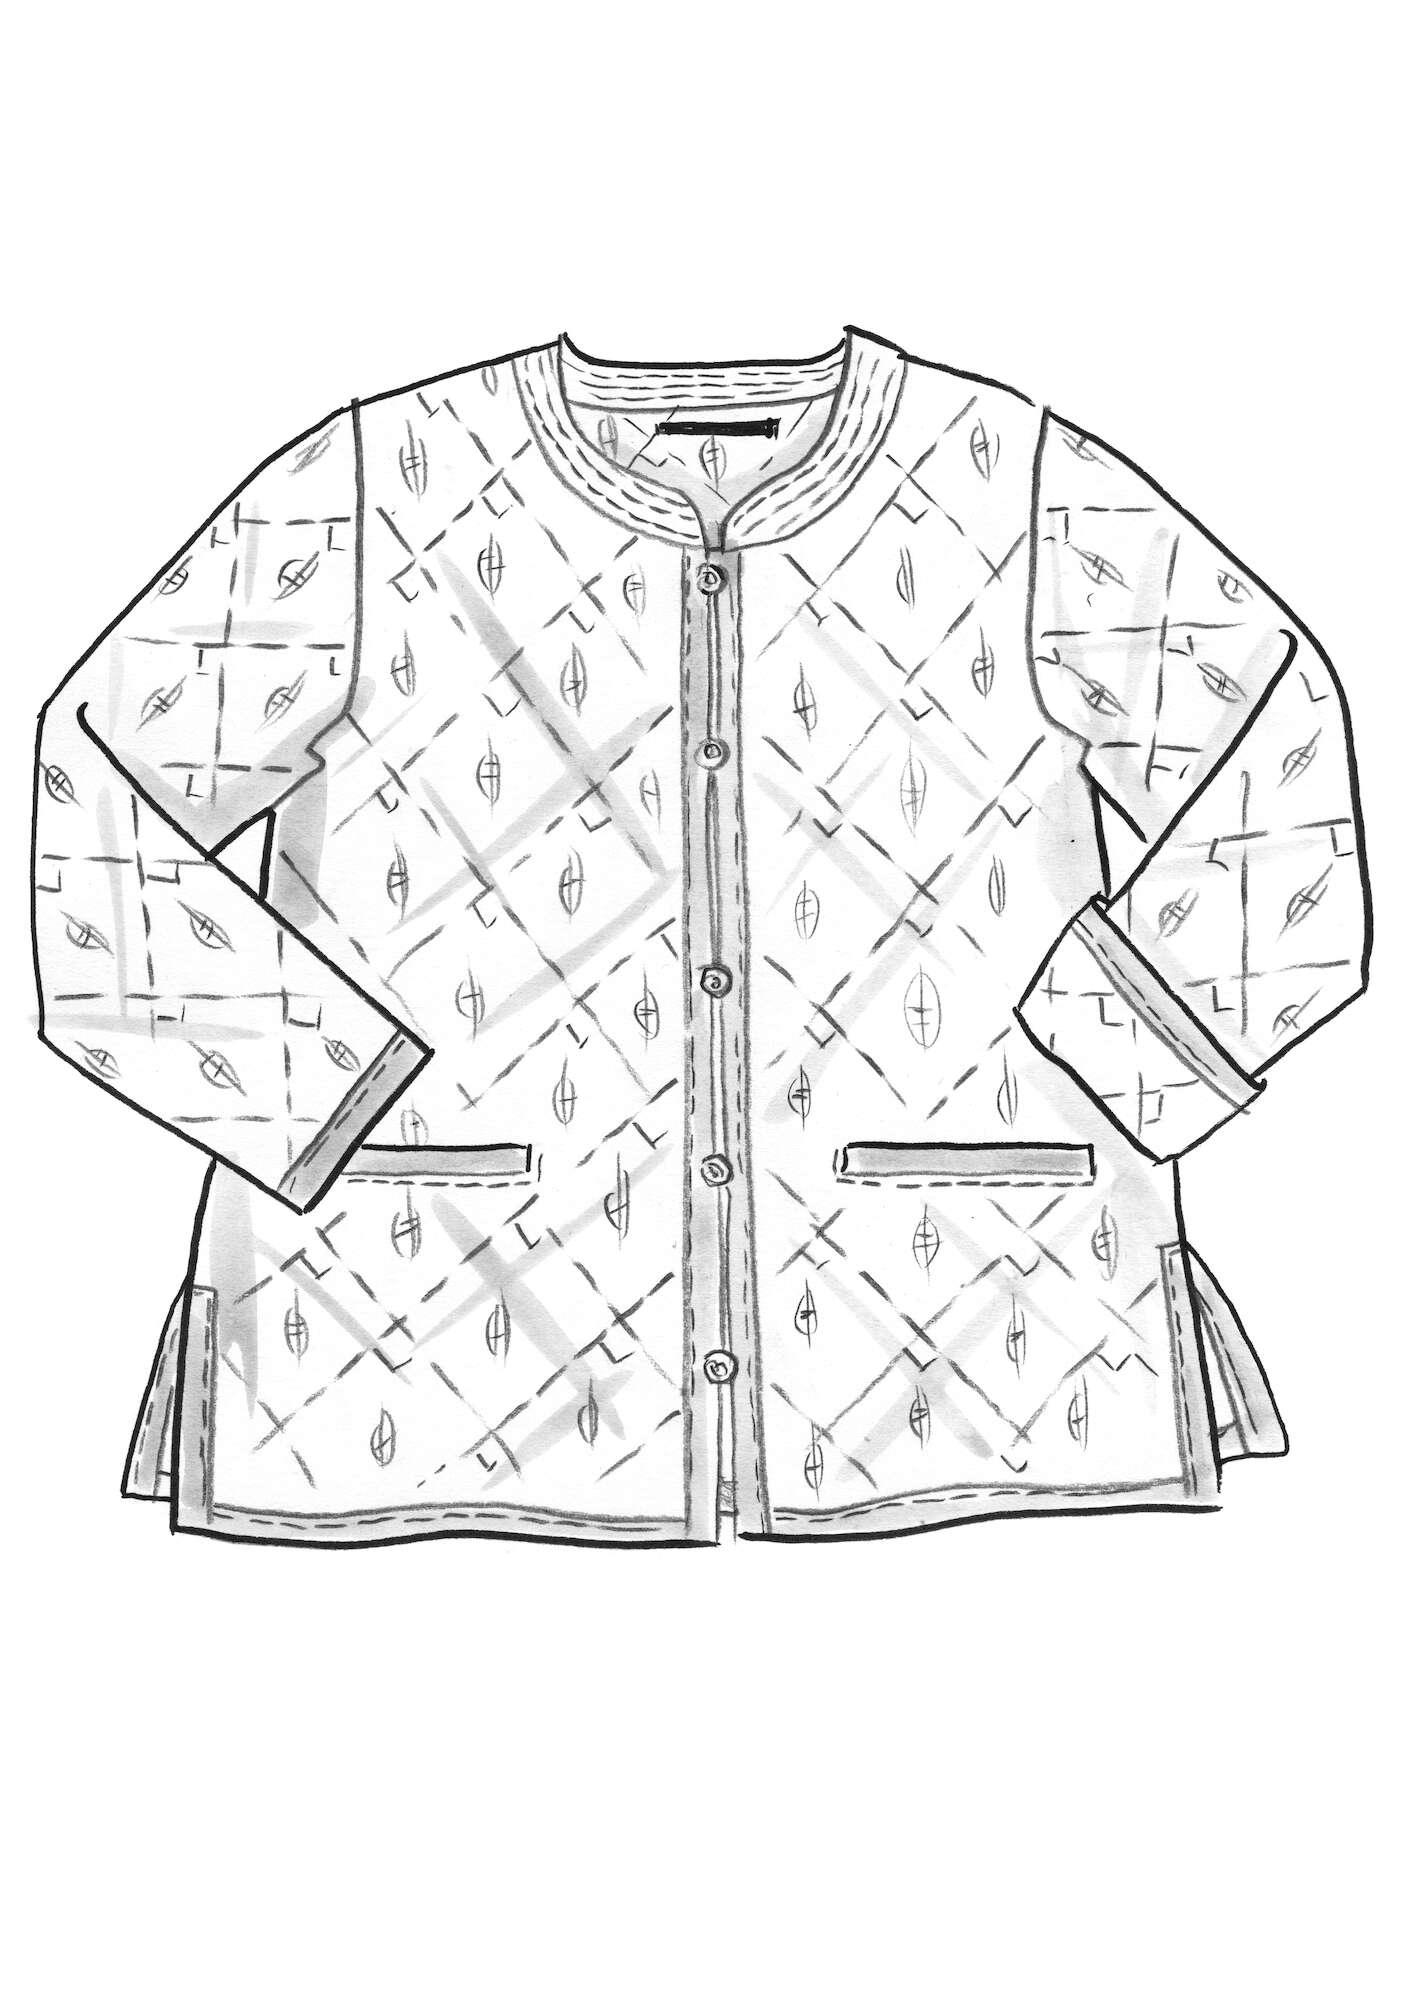 Vevd, quiltet jakke «Signe» i økologisk bomull